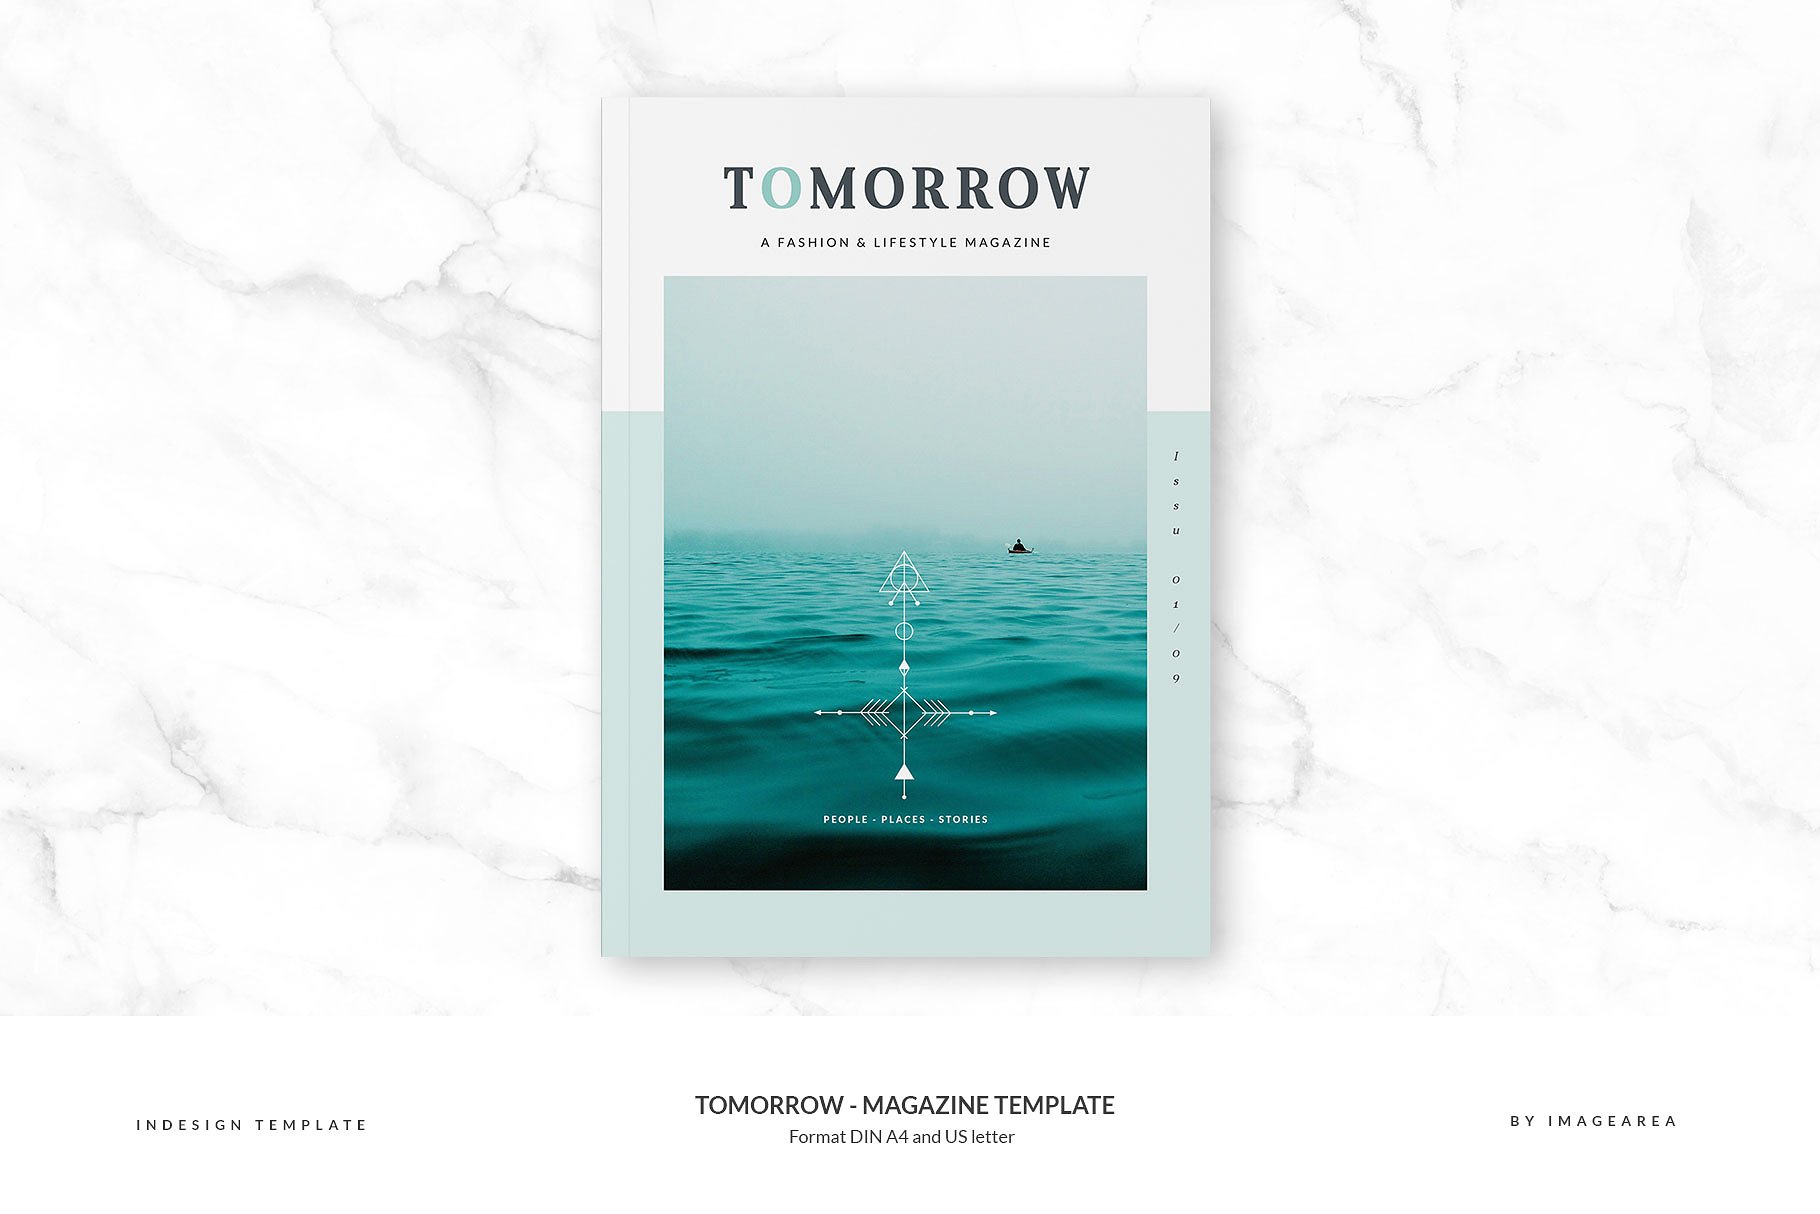 图文并茂排版优秀的专业杂志模板 Tomorrow – Magazine Template插图